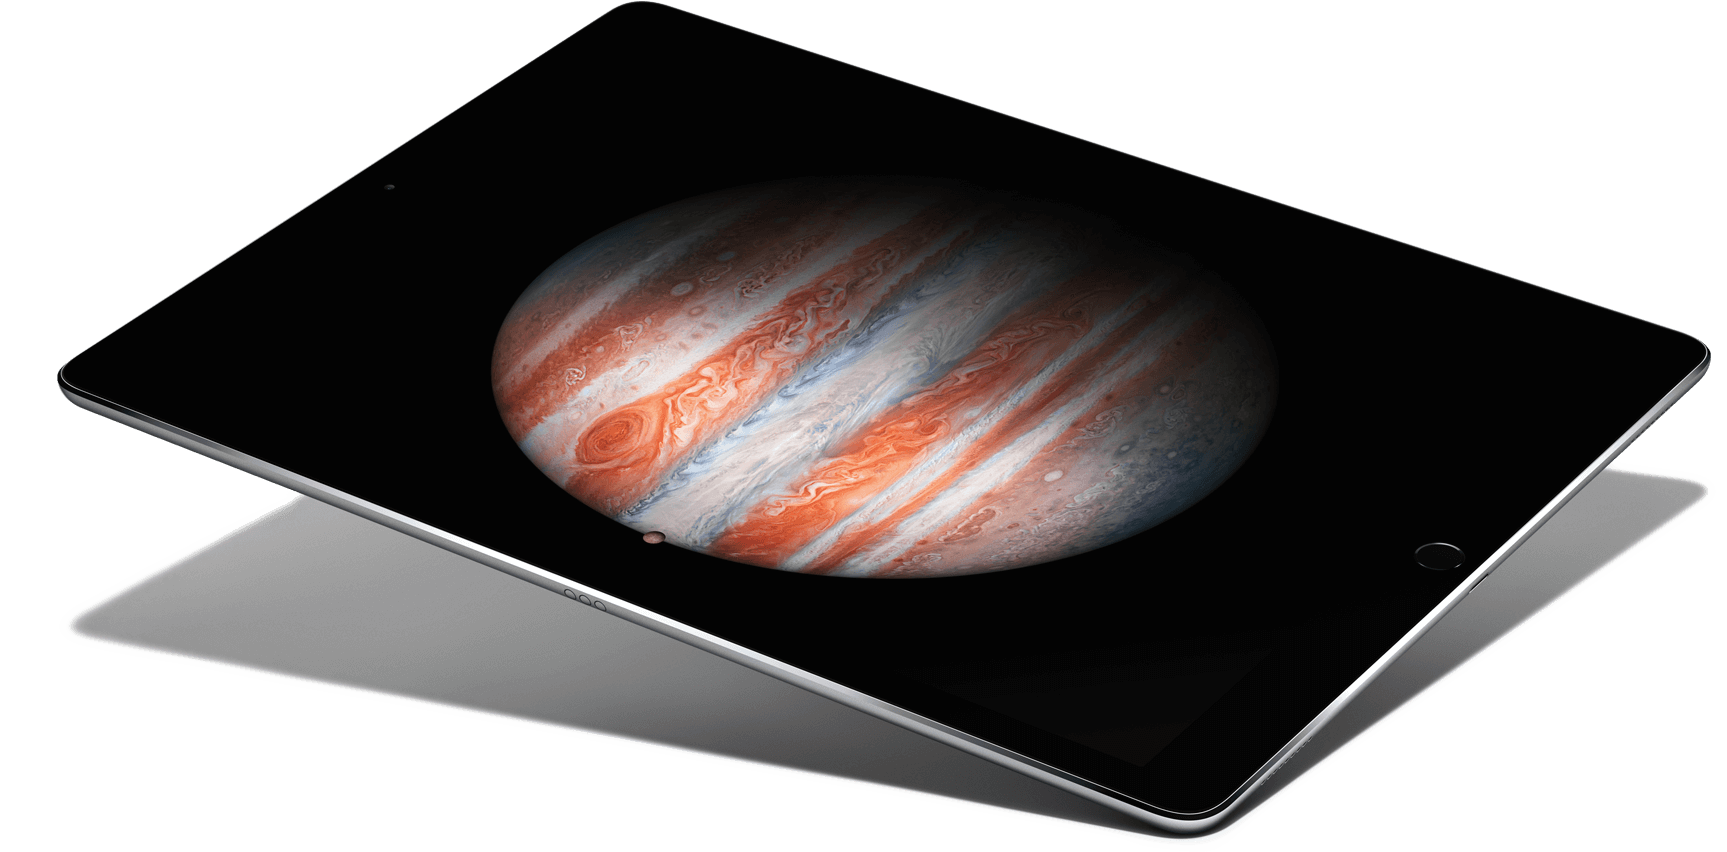 12.9″ inch iPad! The iPad Pro!